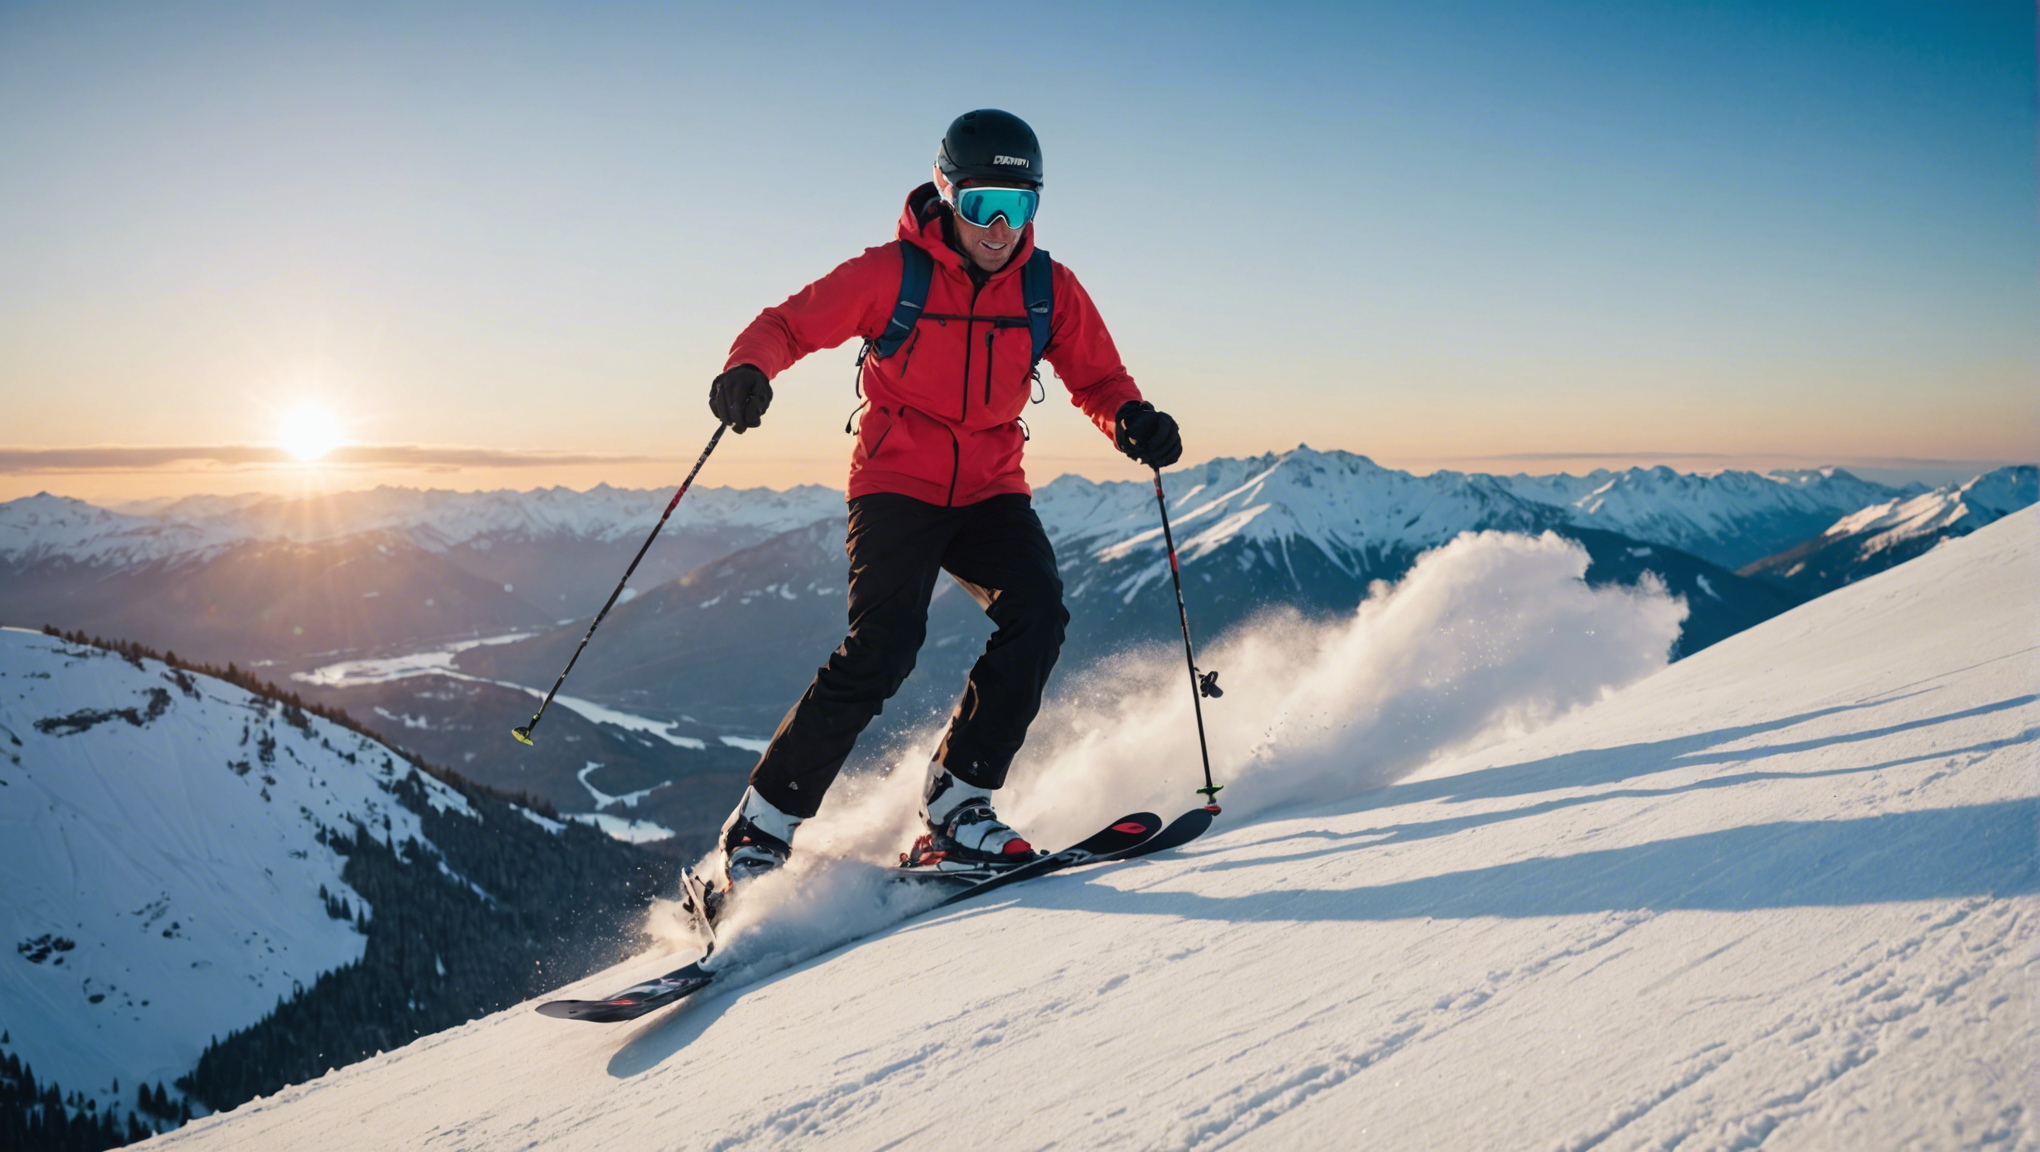 découvrez l'importance de souscrire une assurance ski pour vous protéger des incidents et accidents pendant votre séjour à la montagne.